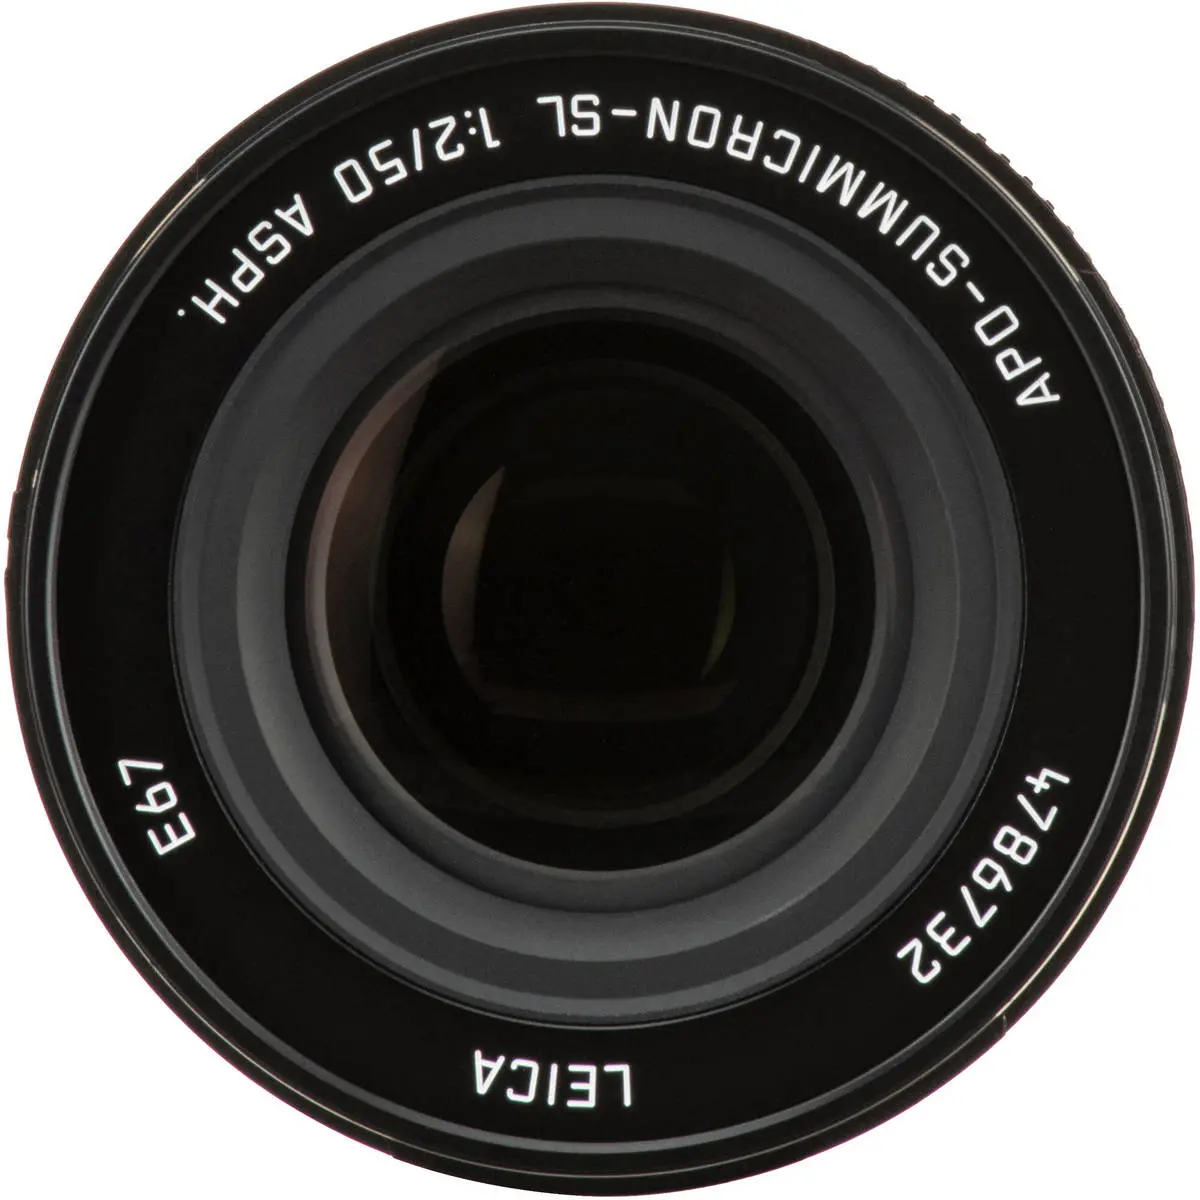 2. Leica APO-Summicron-SL 50mm f/2 Asph. Lens